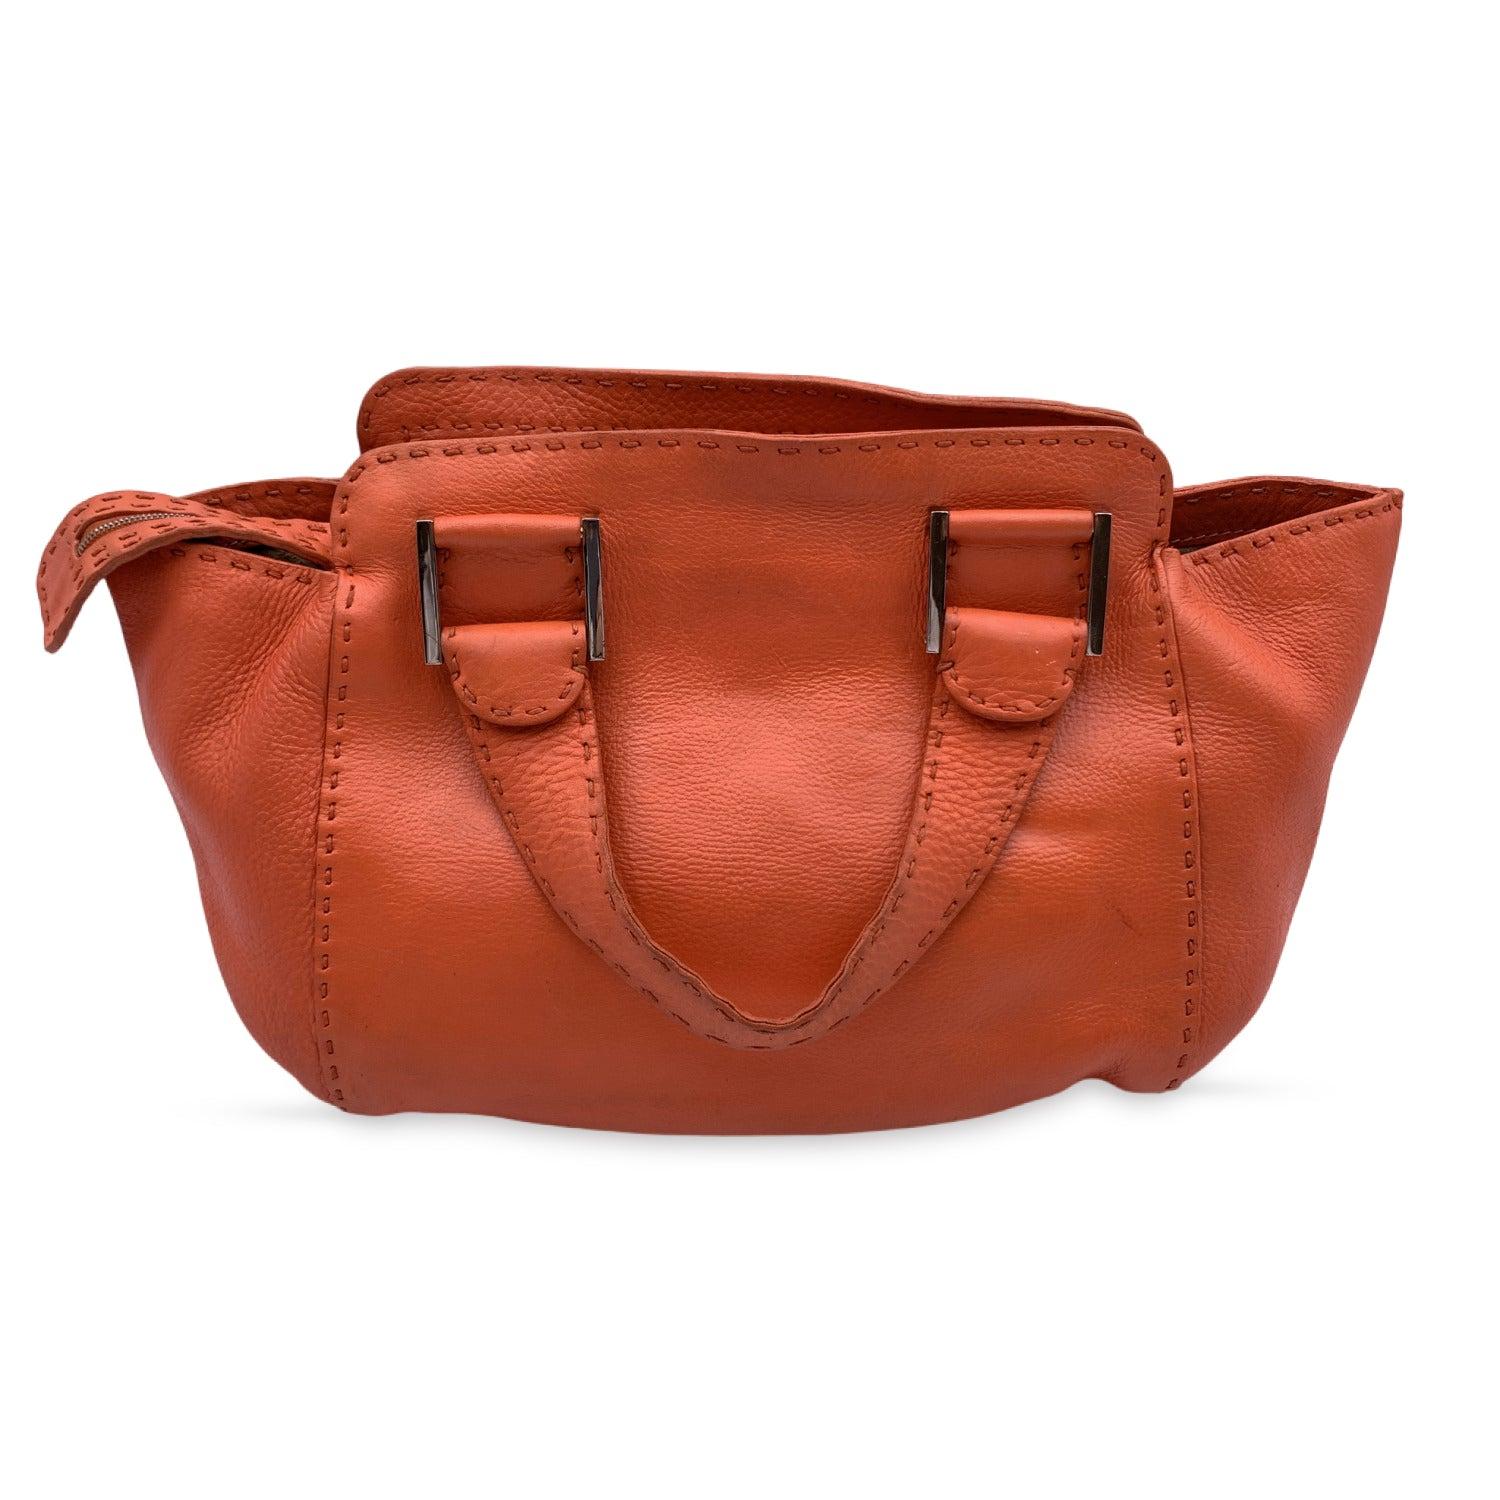 Fendi Selleria Orange Leather Tote Small Handbag Satchel In Fair Condition In Rome, Rome